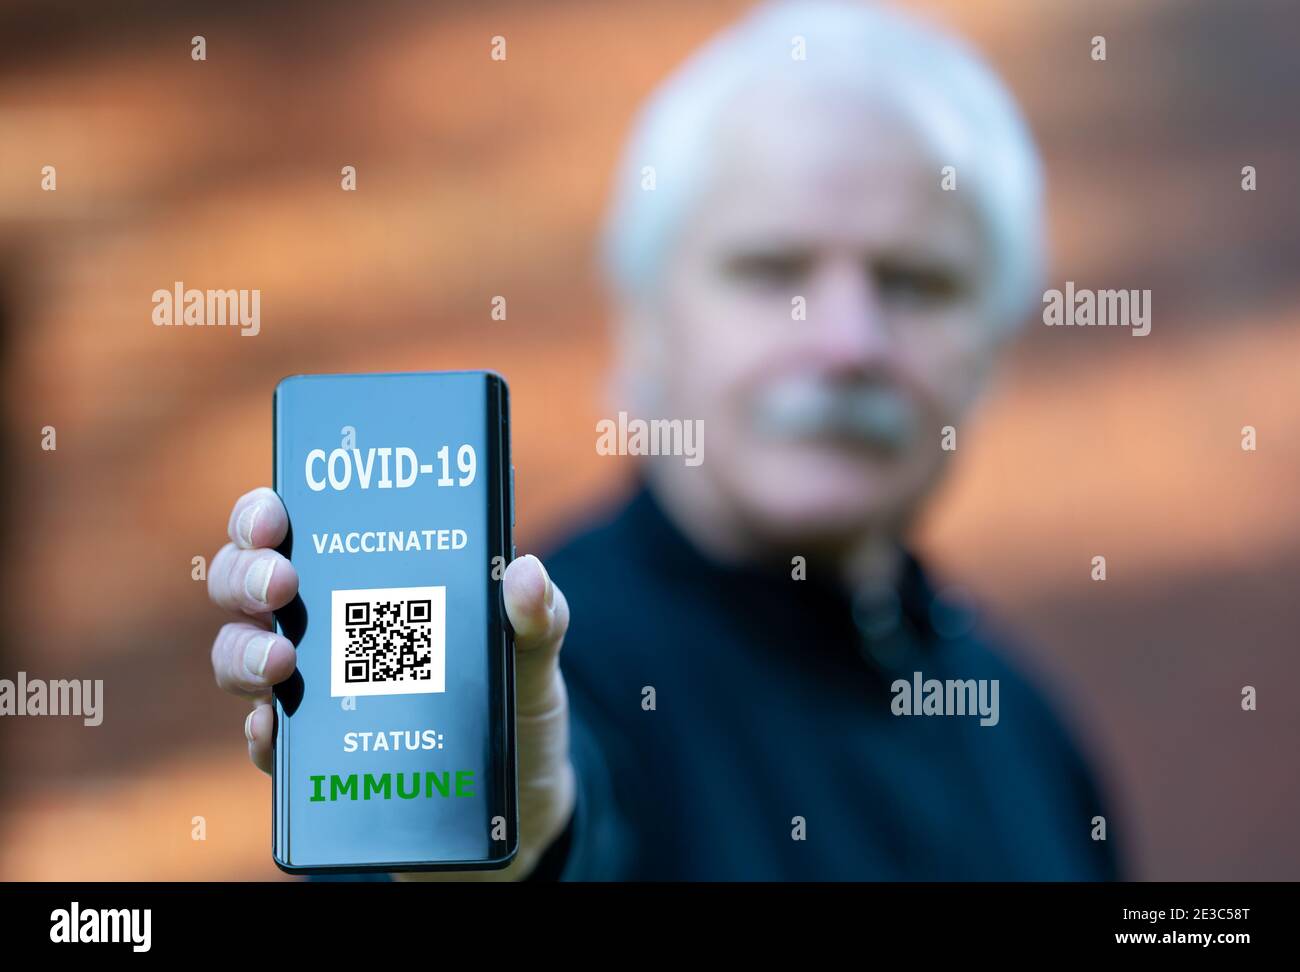 Älterer Mann, der einen Impfpass auf einem Mobiltelefon vorweist, der auf eine Impfung gegen covid-19 hinweist. Stockfoto